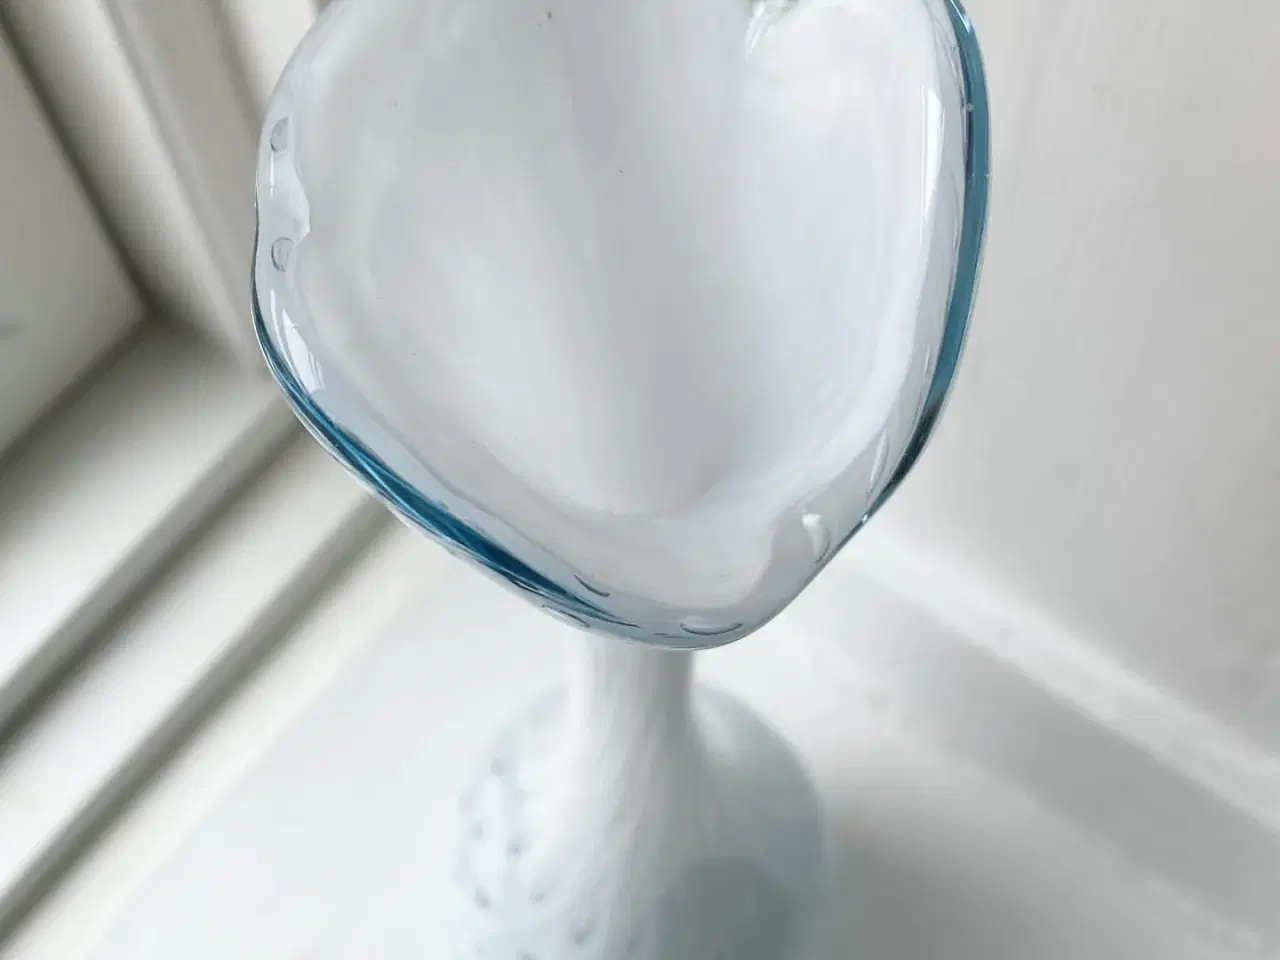 Billede 4 - Hvidt glas m bobler, klar bund